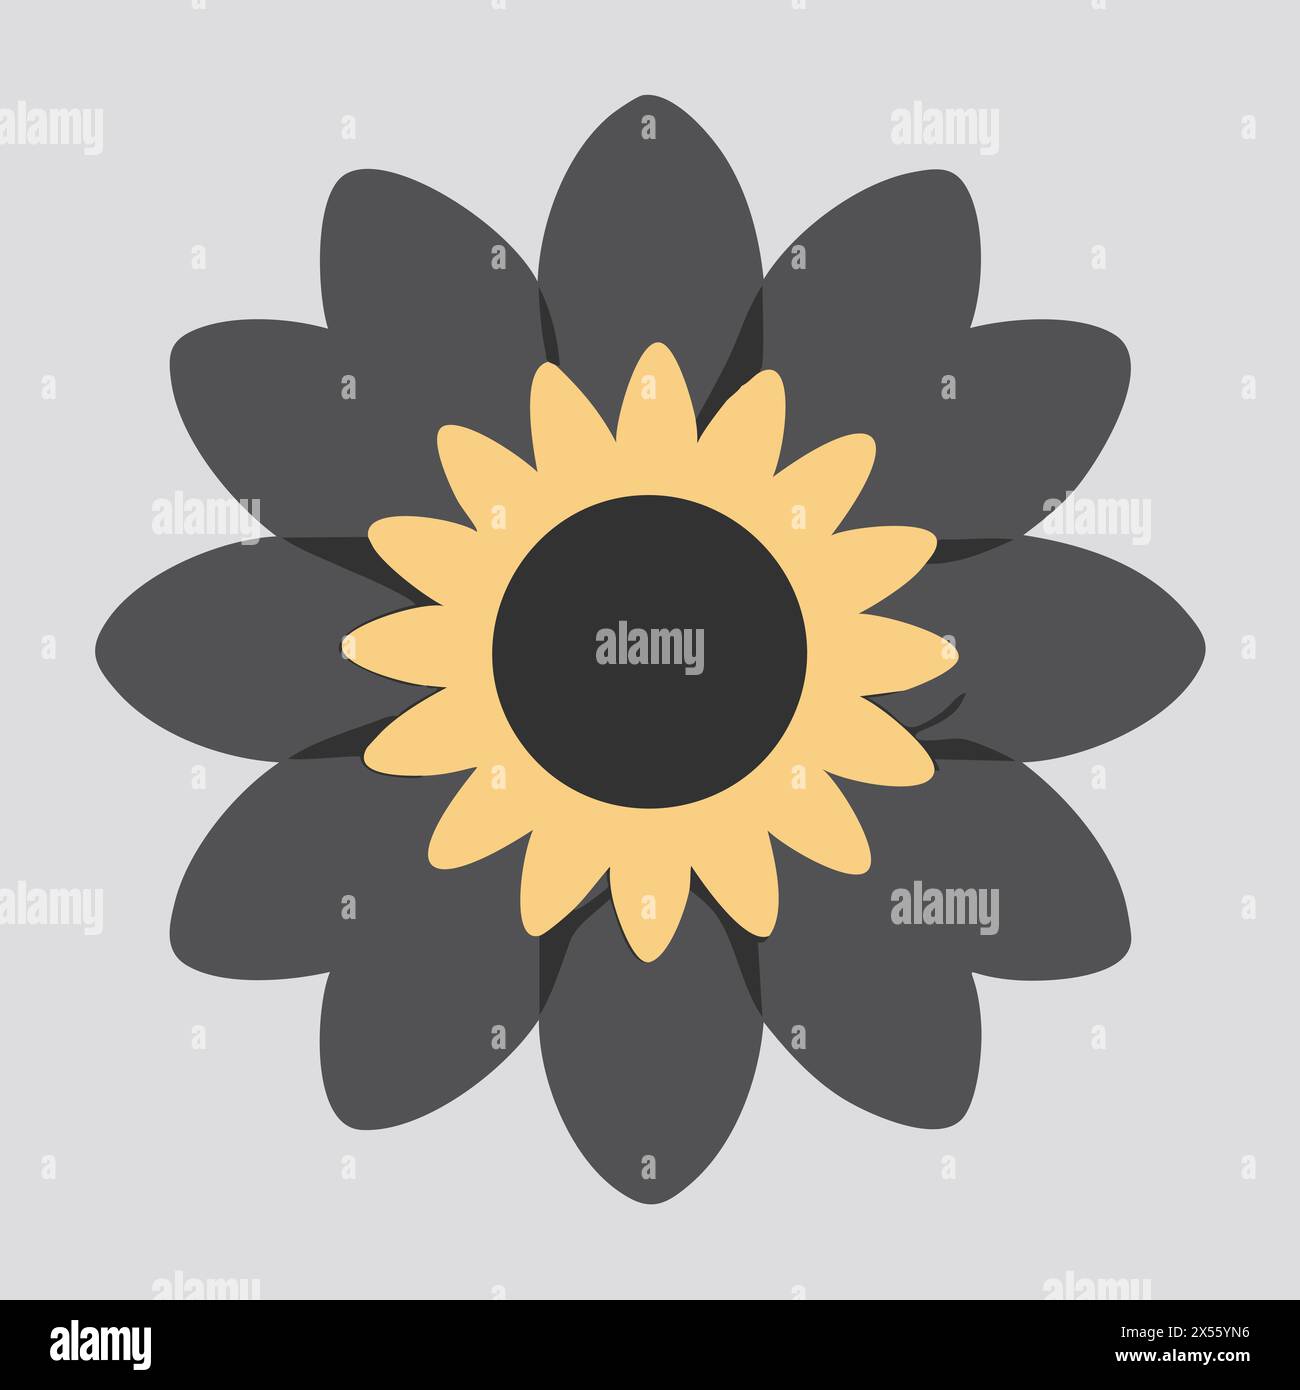 Flower design over gray background, vector illustration. Flat design floral symbol. Stock Vector